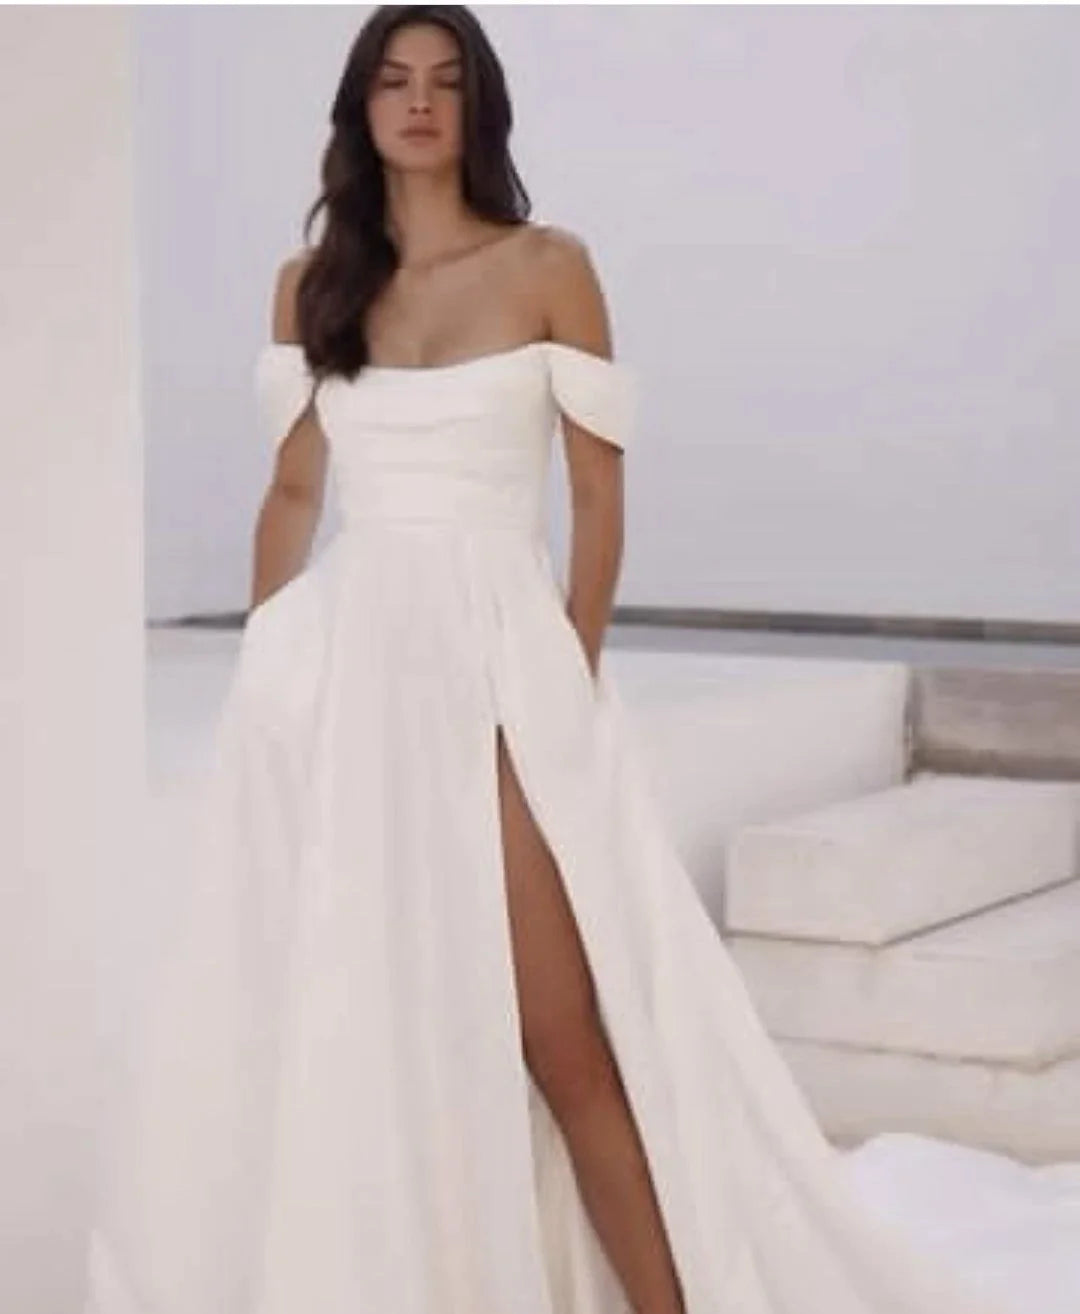 Elegante Satin Hochzeitskleiderseite Schlitz kurzärmel für Frauen mit Taschenbilanzbrautkleidern, die sich an Maßnahmen elegant anpassen können